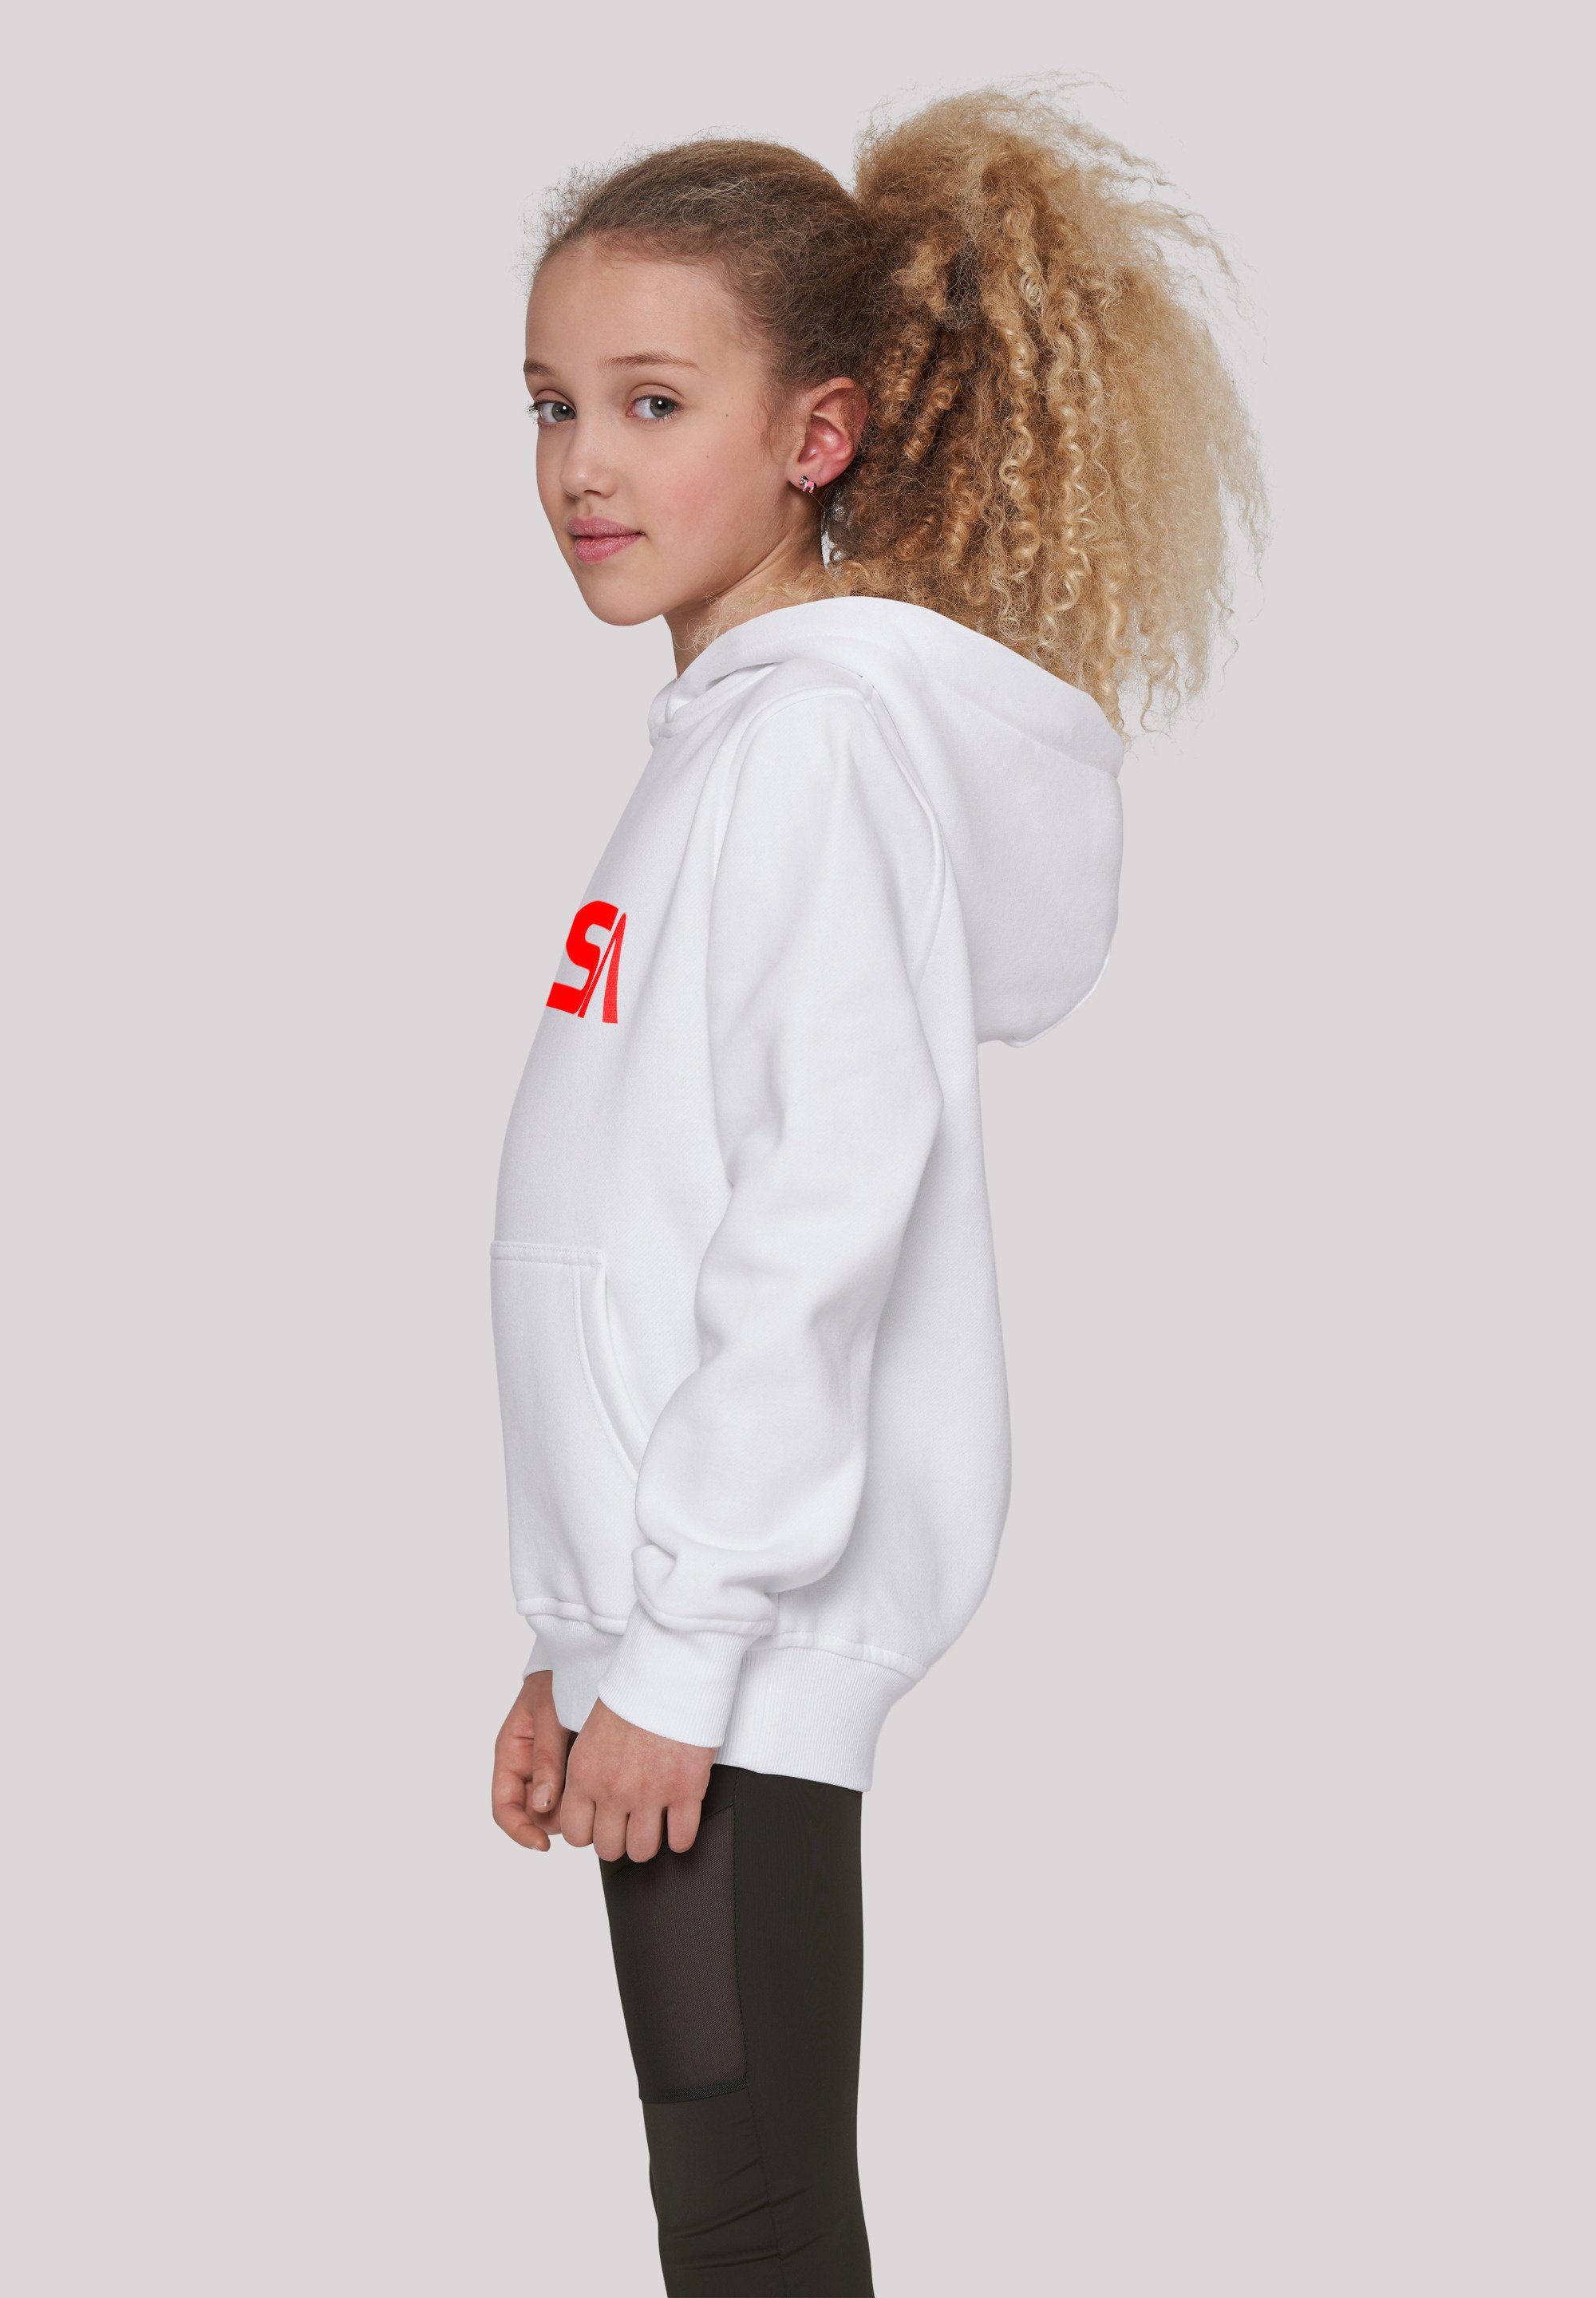 F4NT4STIC Sweatshirt Modern Logo Unisex Merch,Jungen,Mädchen,Bedruckt Kinder,Premium White NASA